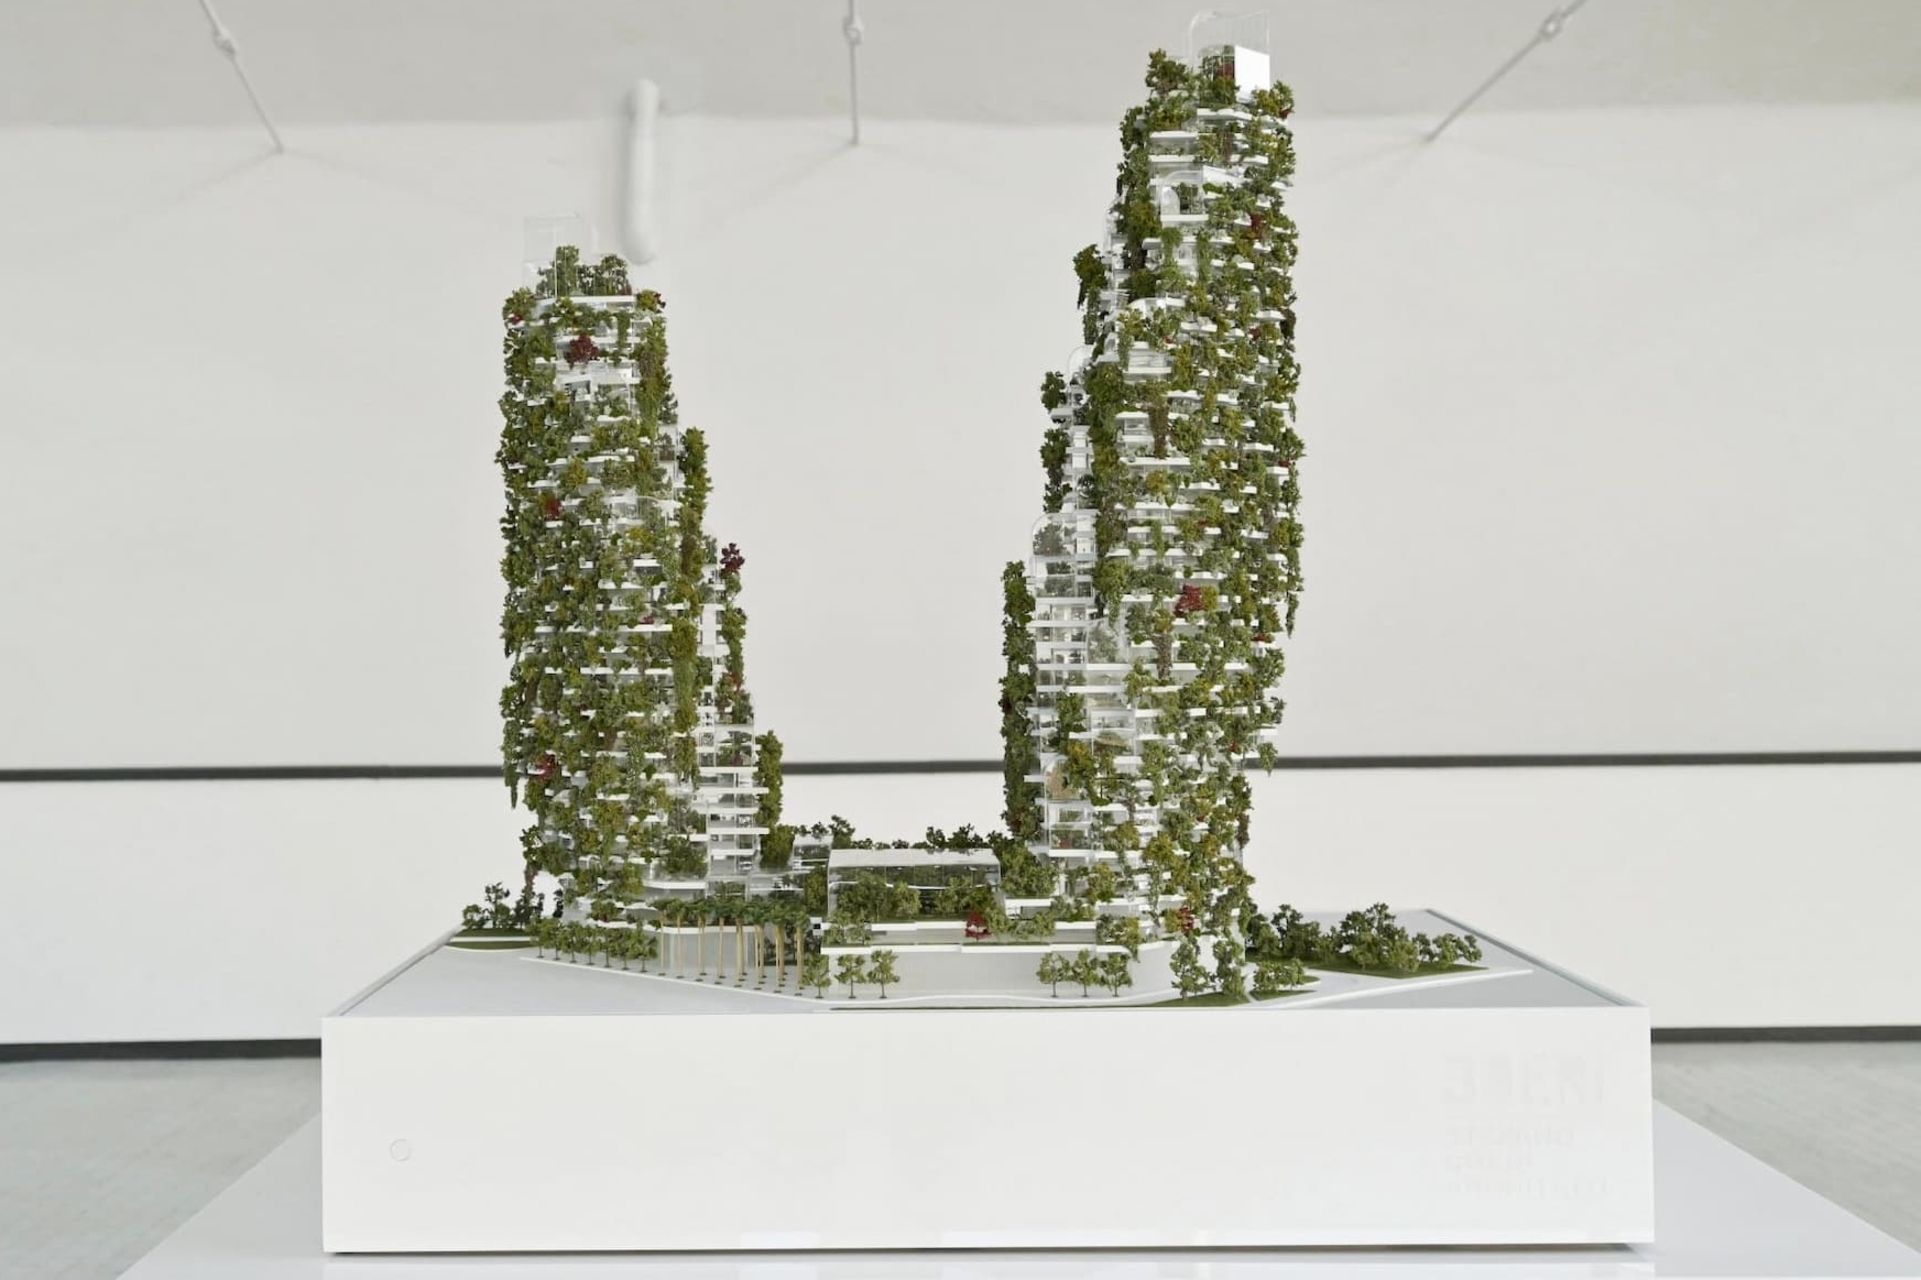 Bosco Verticale: il modello di Dubai conterà di due torri che puntano sul concetto di riforestazione urbana. Grande attenzione sarà volta al ciclo dell'acqua, grazie al quale questa preziosa risorsa non sarà sprecata